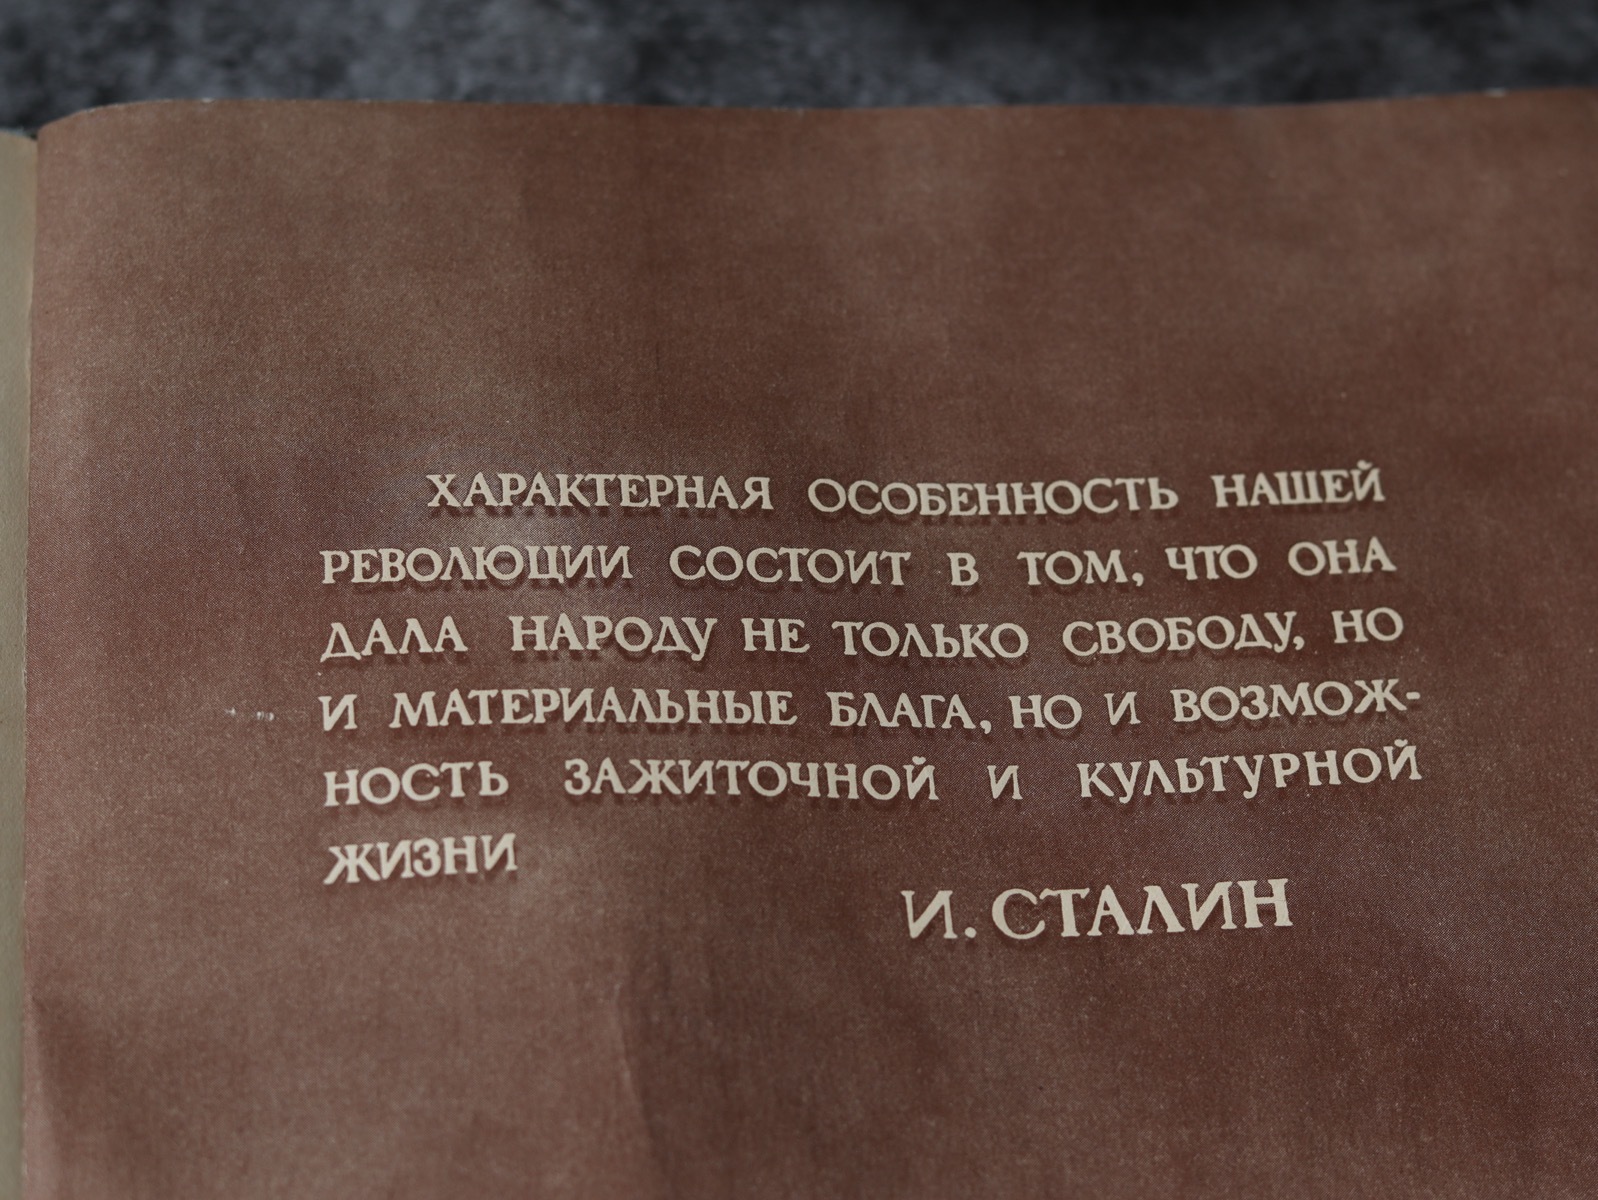 Книга о вкусной и здоровой пище, Пищепромиздат, Москва, 1952 г.